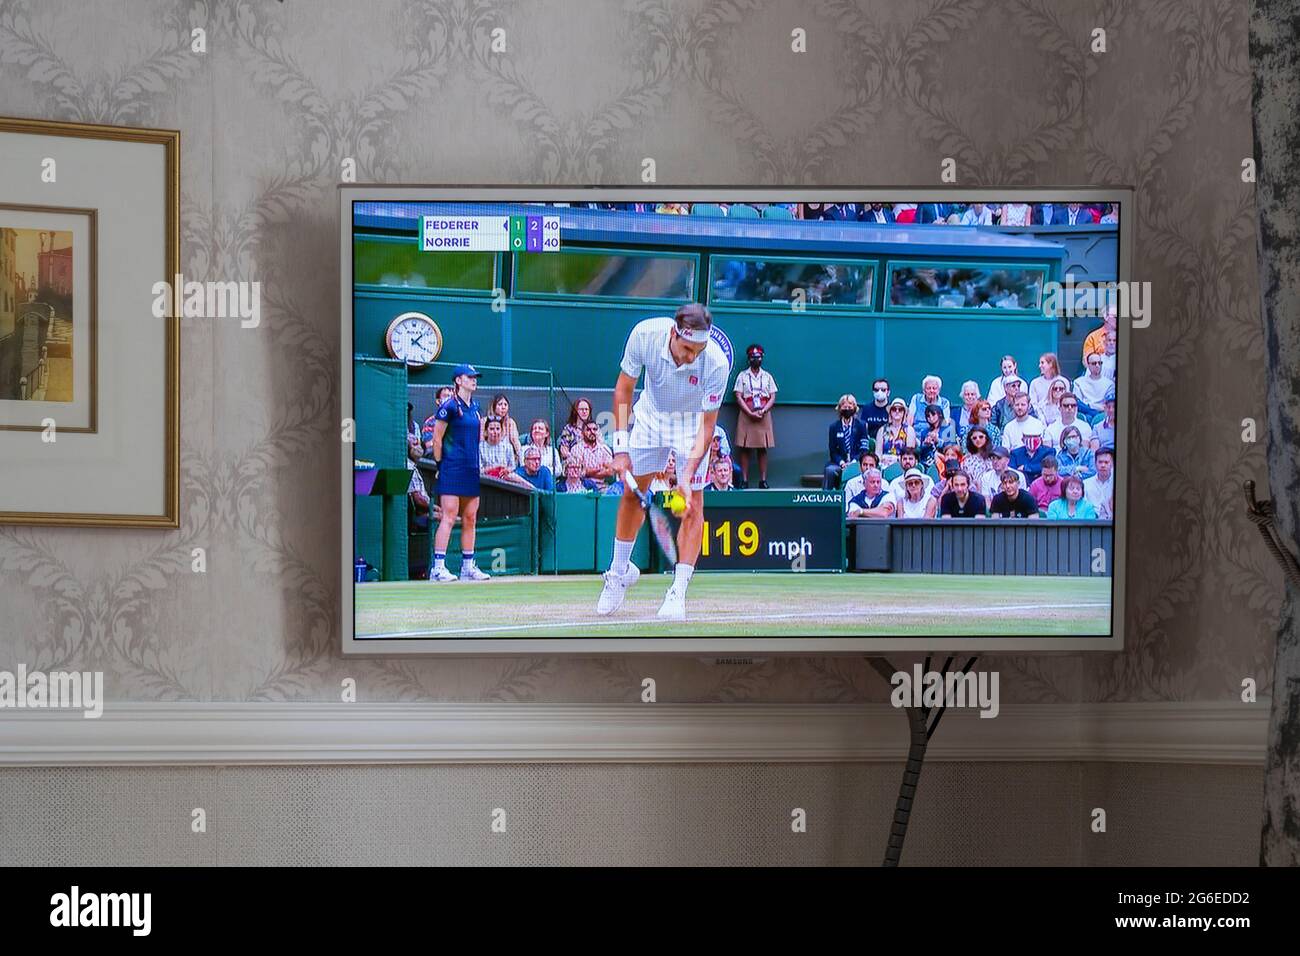 BBC-Berichterstattung über Wimbledon 2021 auf einem Flachbildfernseher an einer Wand in einer Lounge in einem Haus in England. Das angezeigte Spiel ist Federer vs Norrie. Juli 2021 Stockfoto